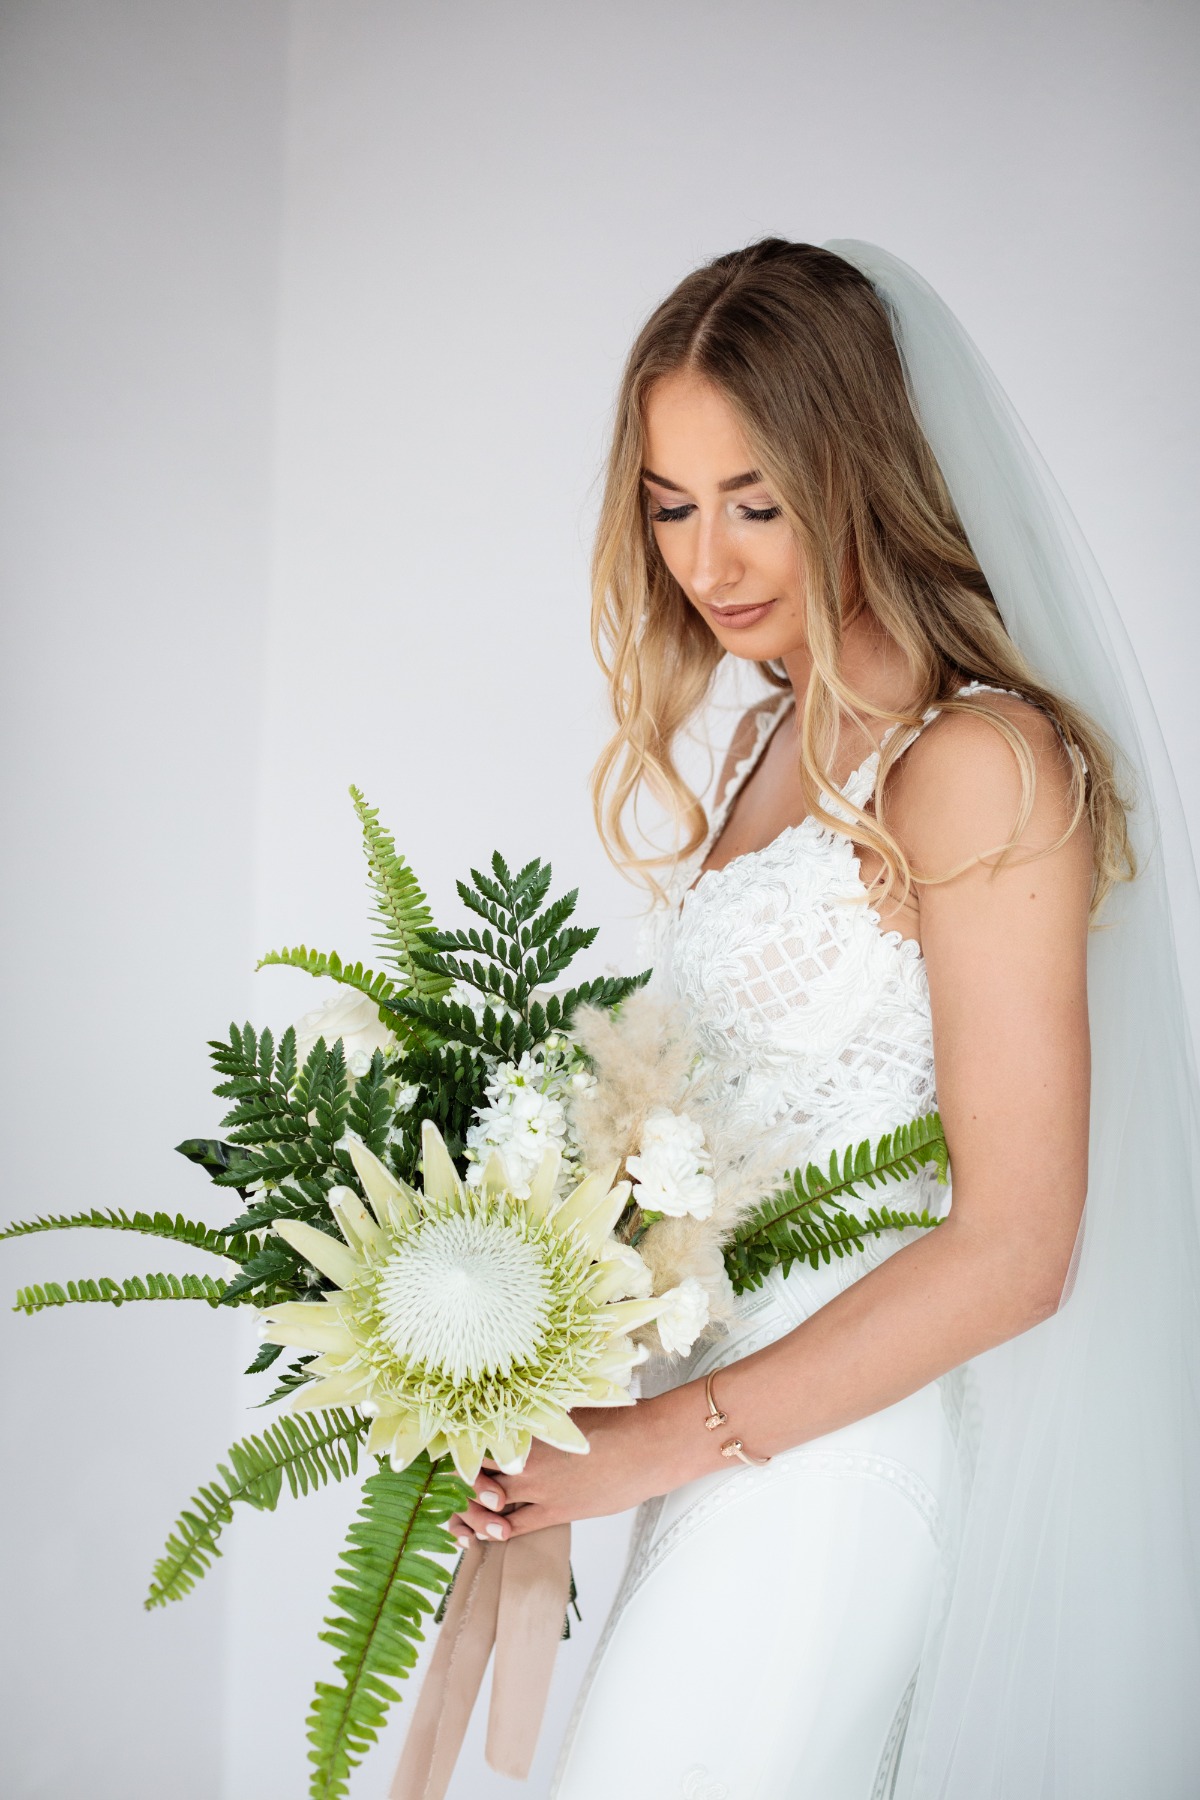 Giant white protea wedding bouquet